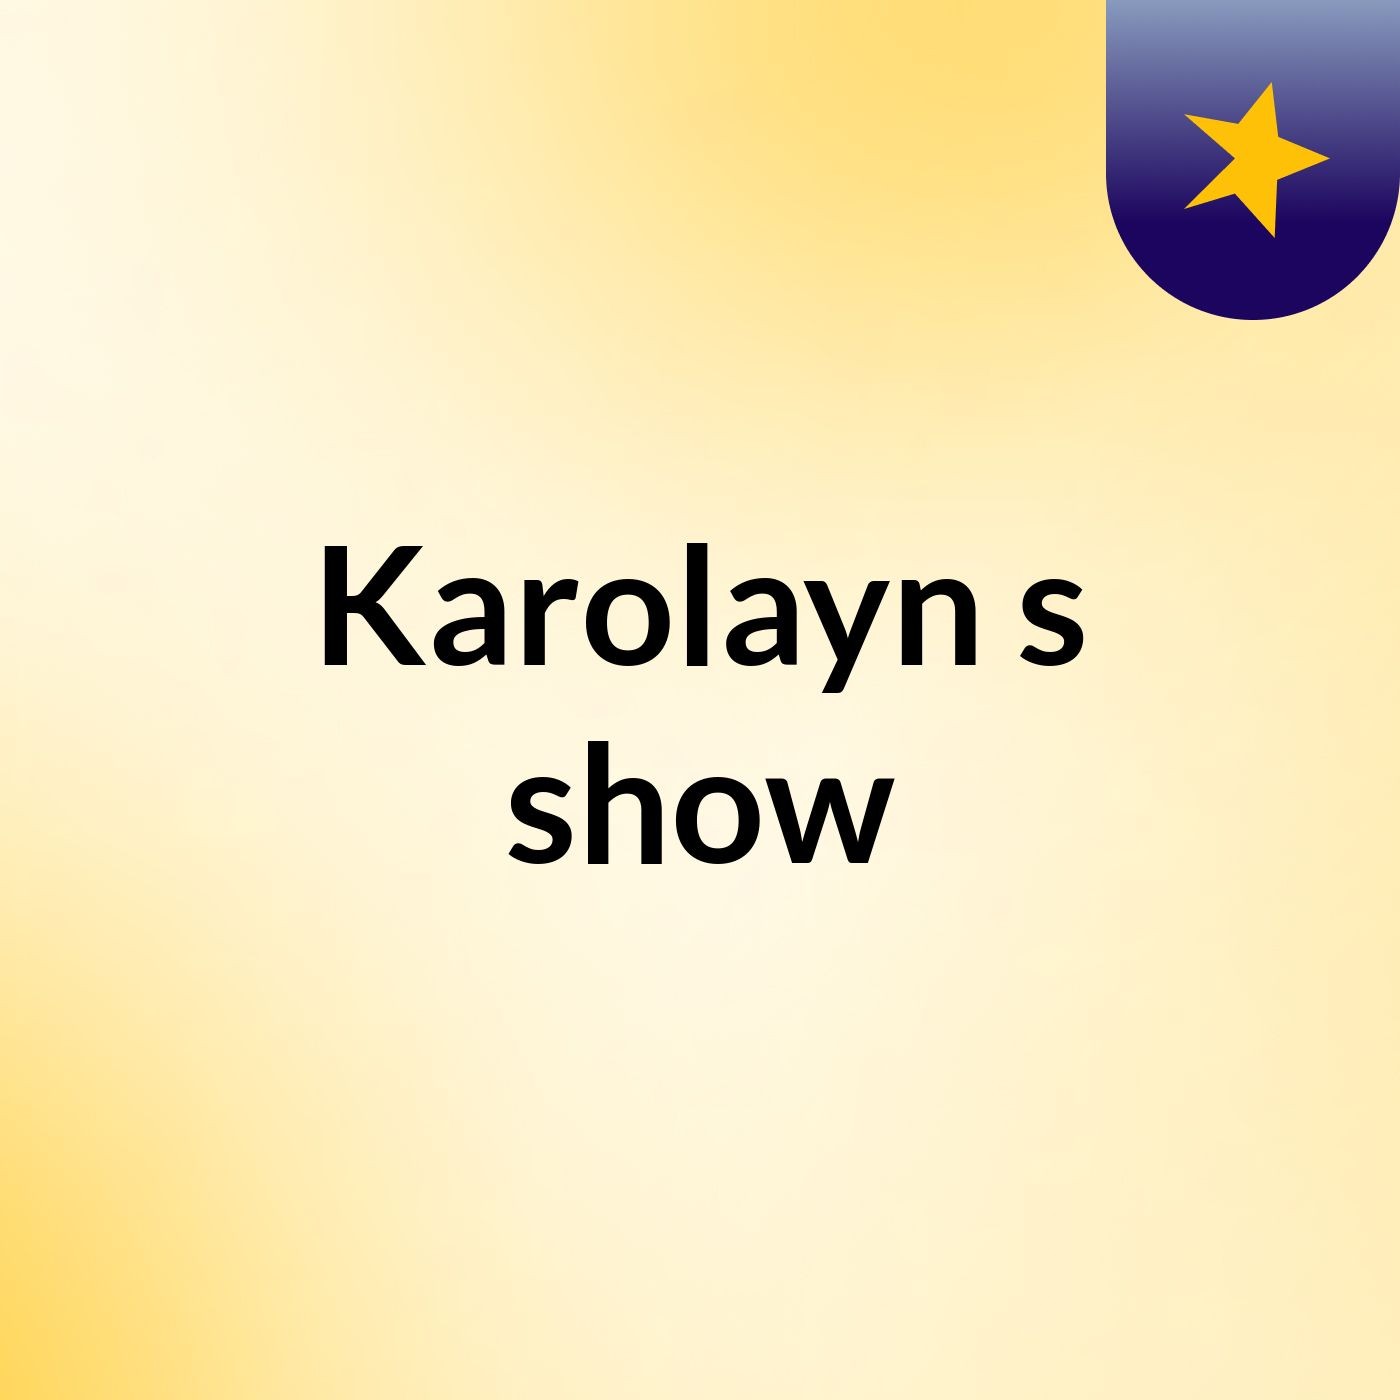 Karolayn's show